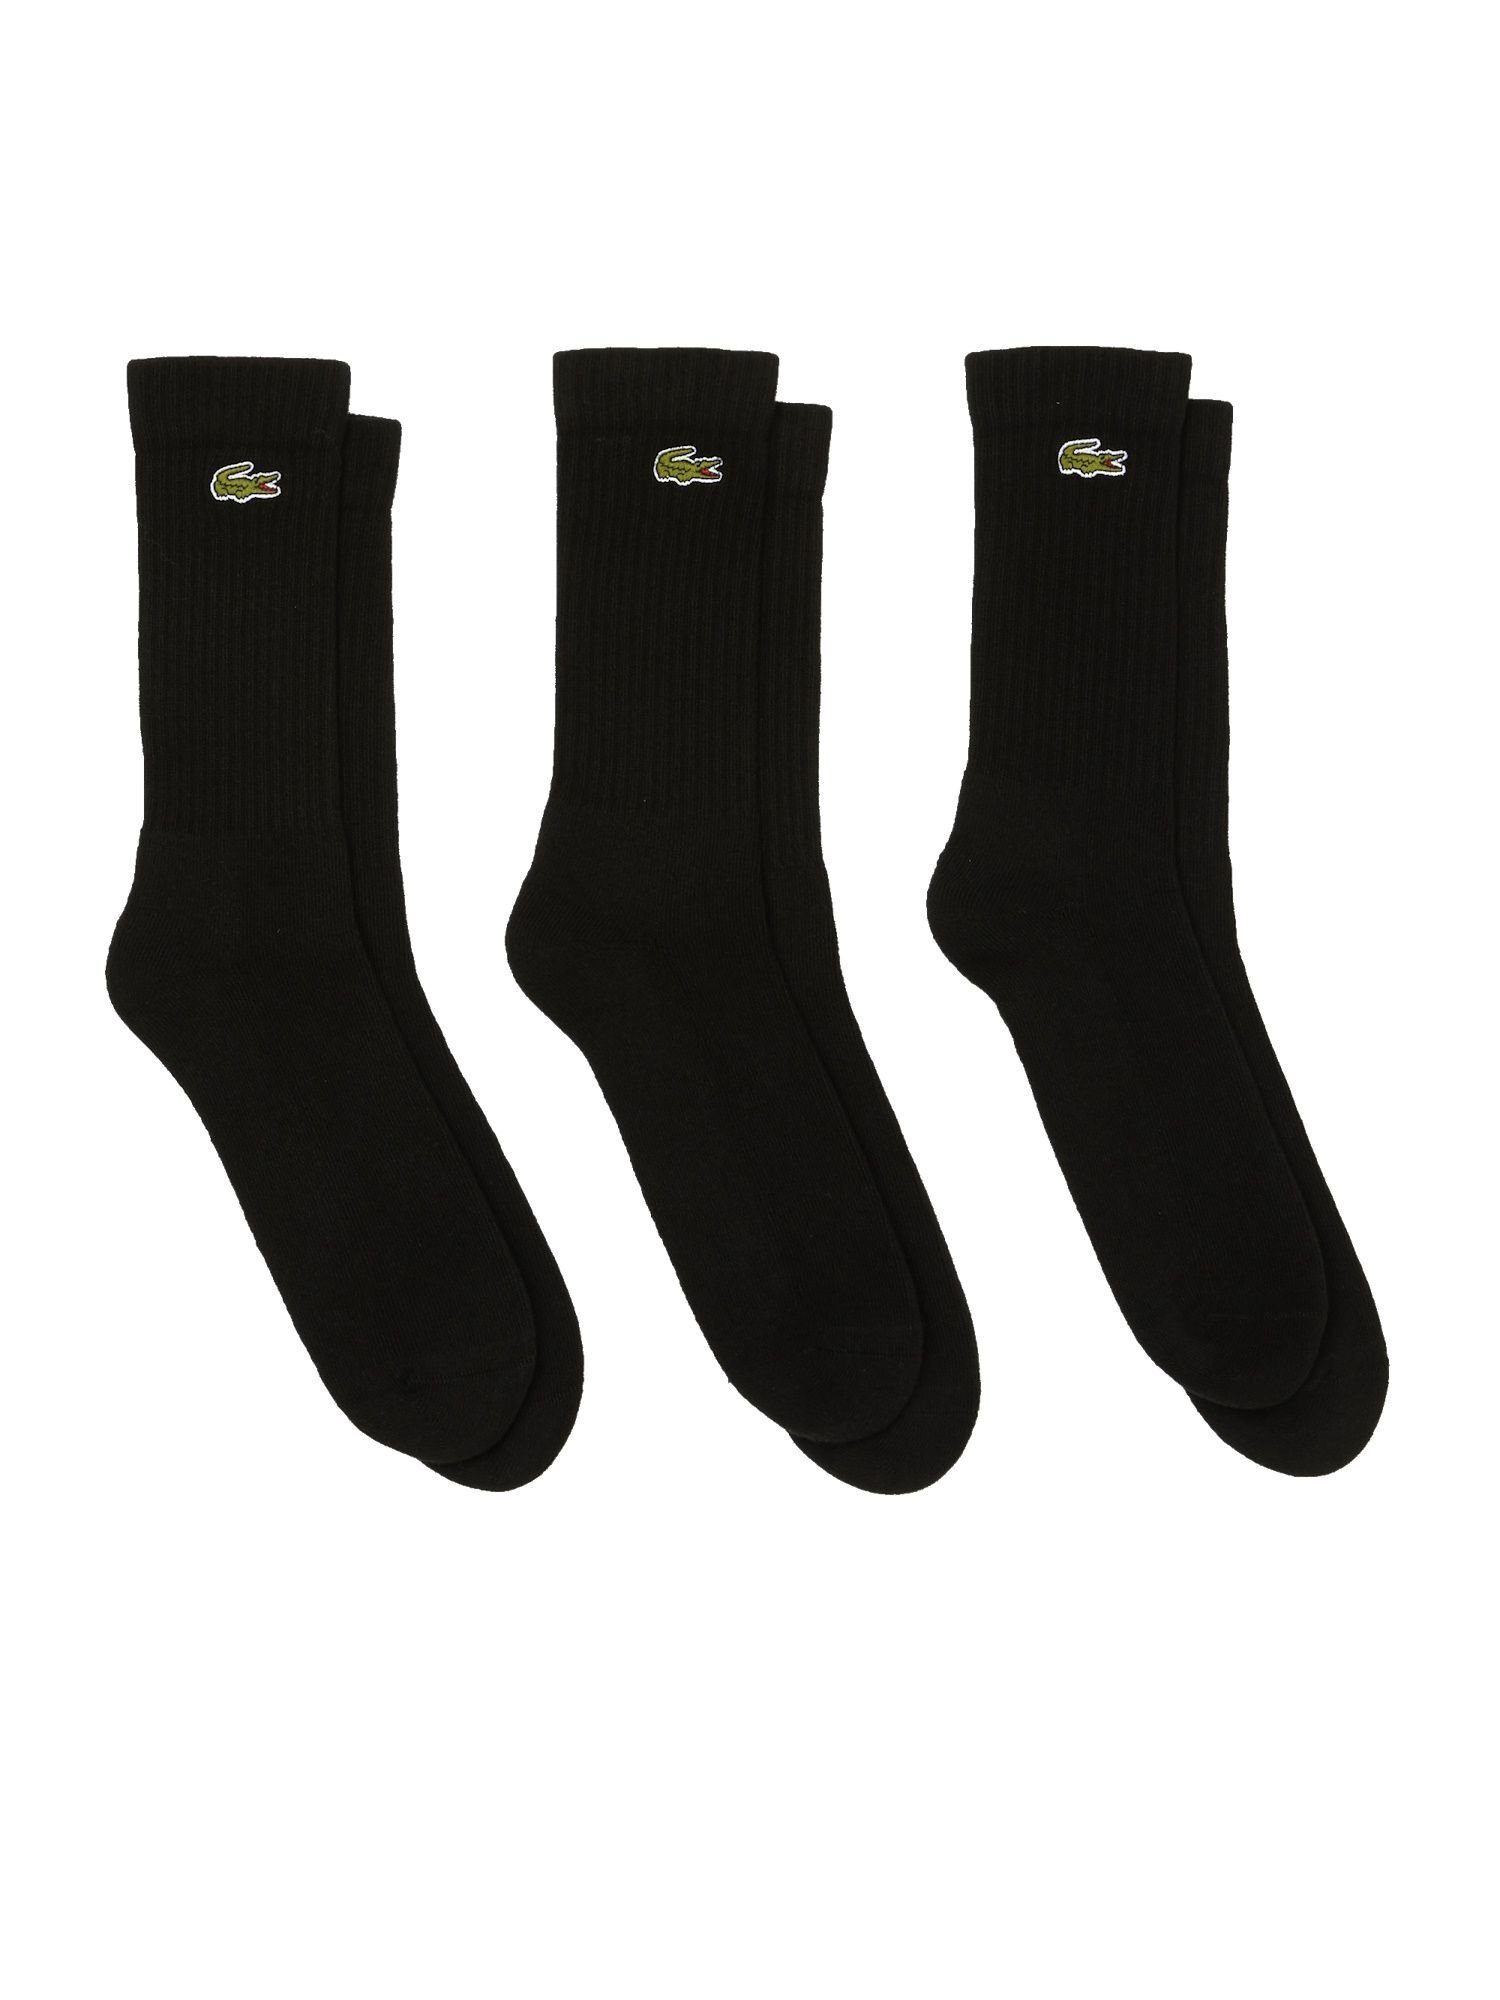 Lacoste Socken schwarz Dreierpack hohe Socken (3-Paar) Socken Permanent Offer